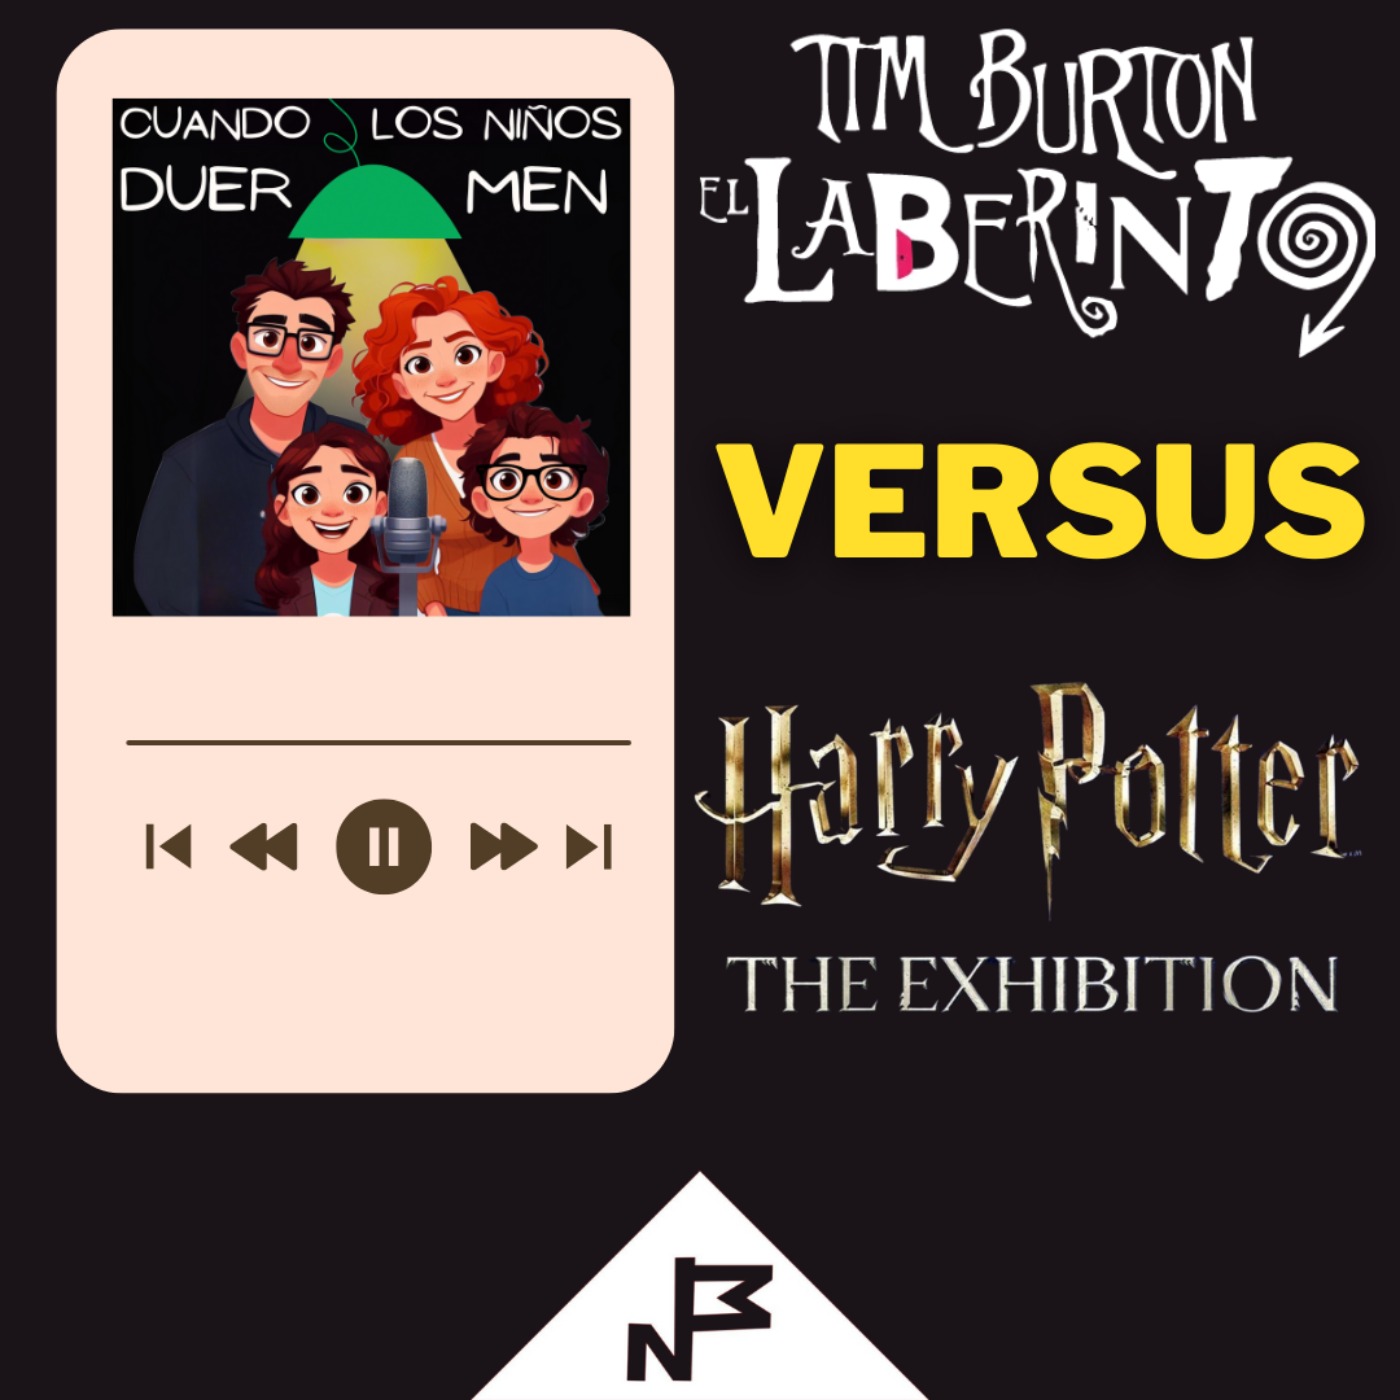 El laberinto de Tim Burton versus Harry Potter exhibition